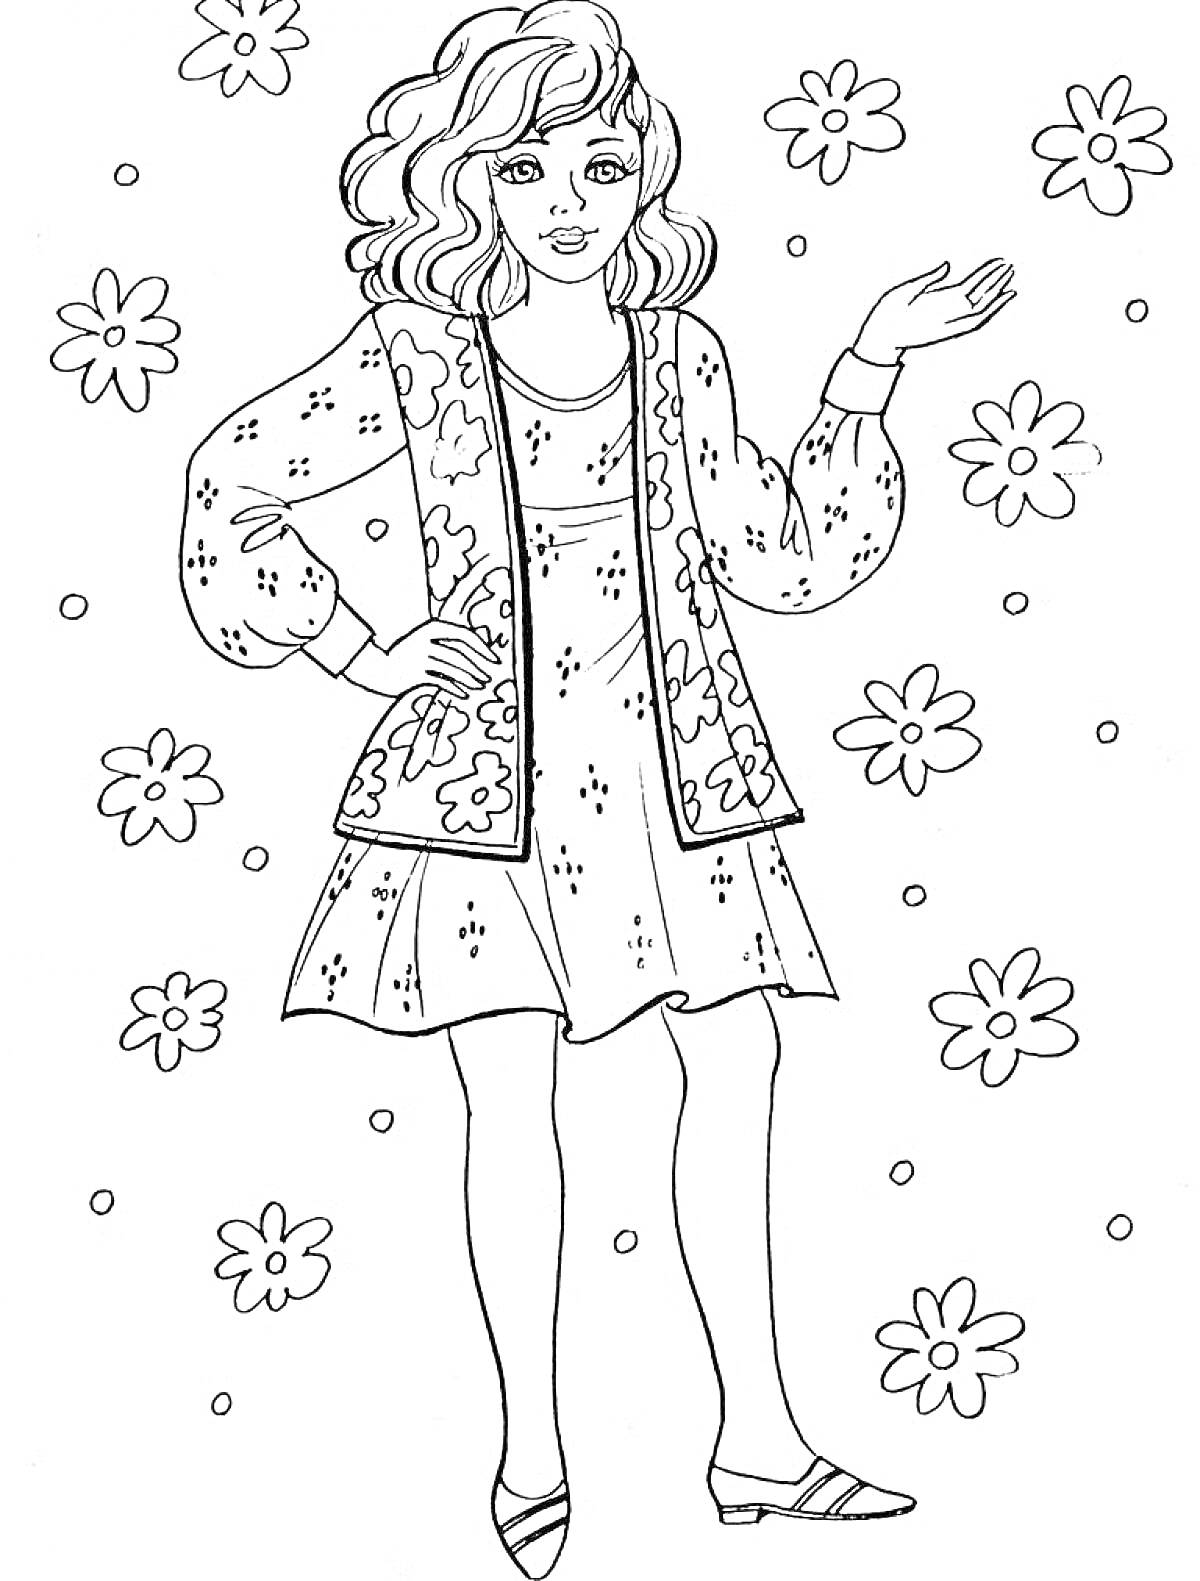 Раскраска Девочка в платье с узорами, окруженная цветами